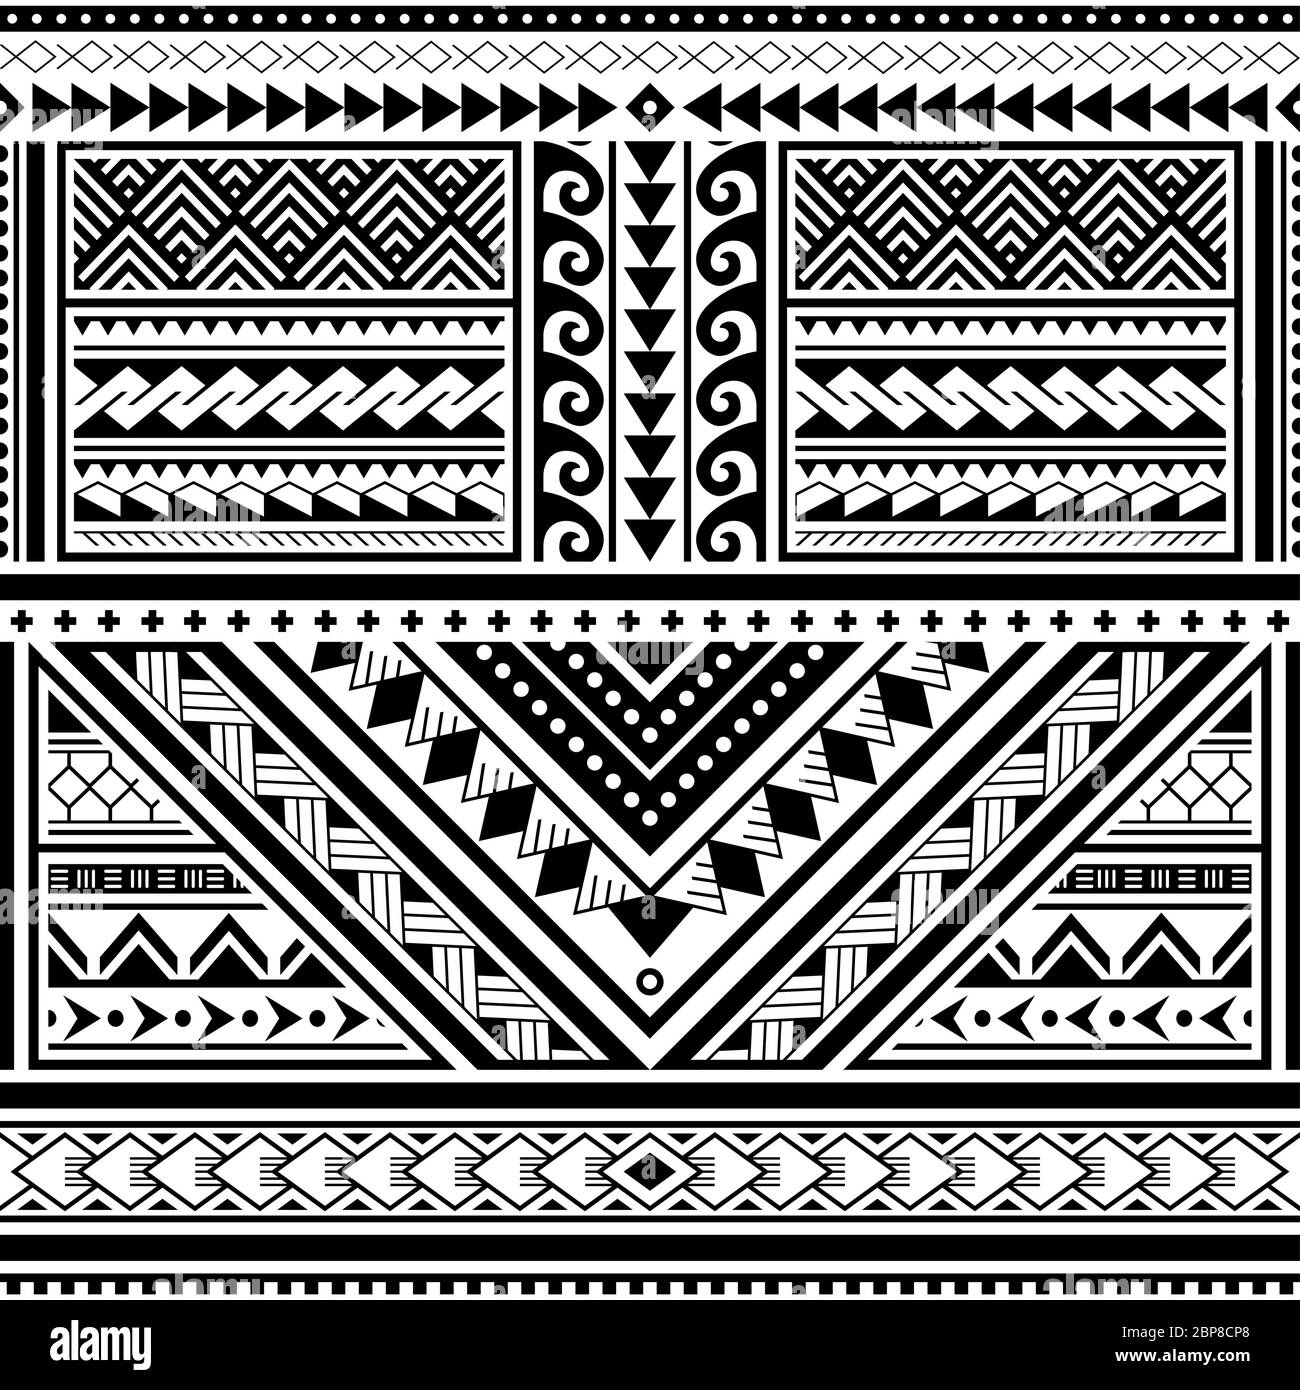 Polynesische Tattoo nahtlose Vektor-Muster, hawaiianischen Tribal-Design inspiriert von Kunst traditionelle geometrische Kunst von Inseln auf dem Pazifik Stock Vektor